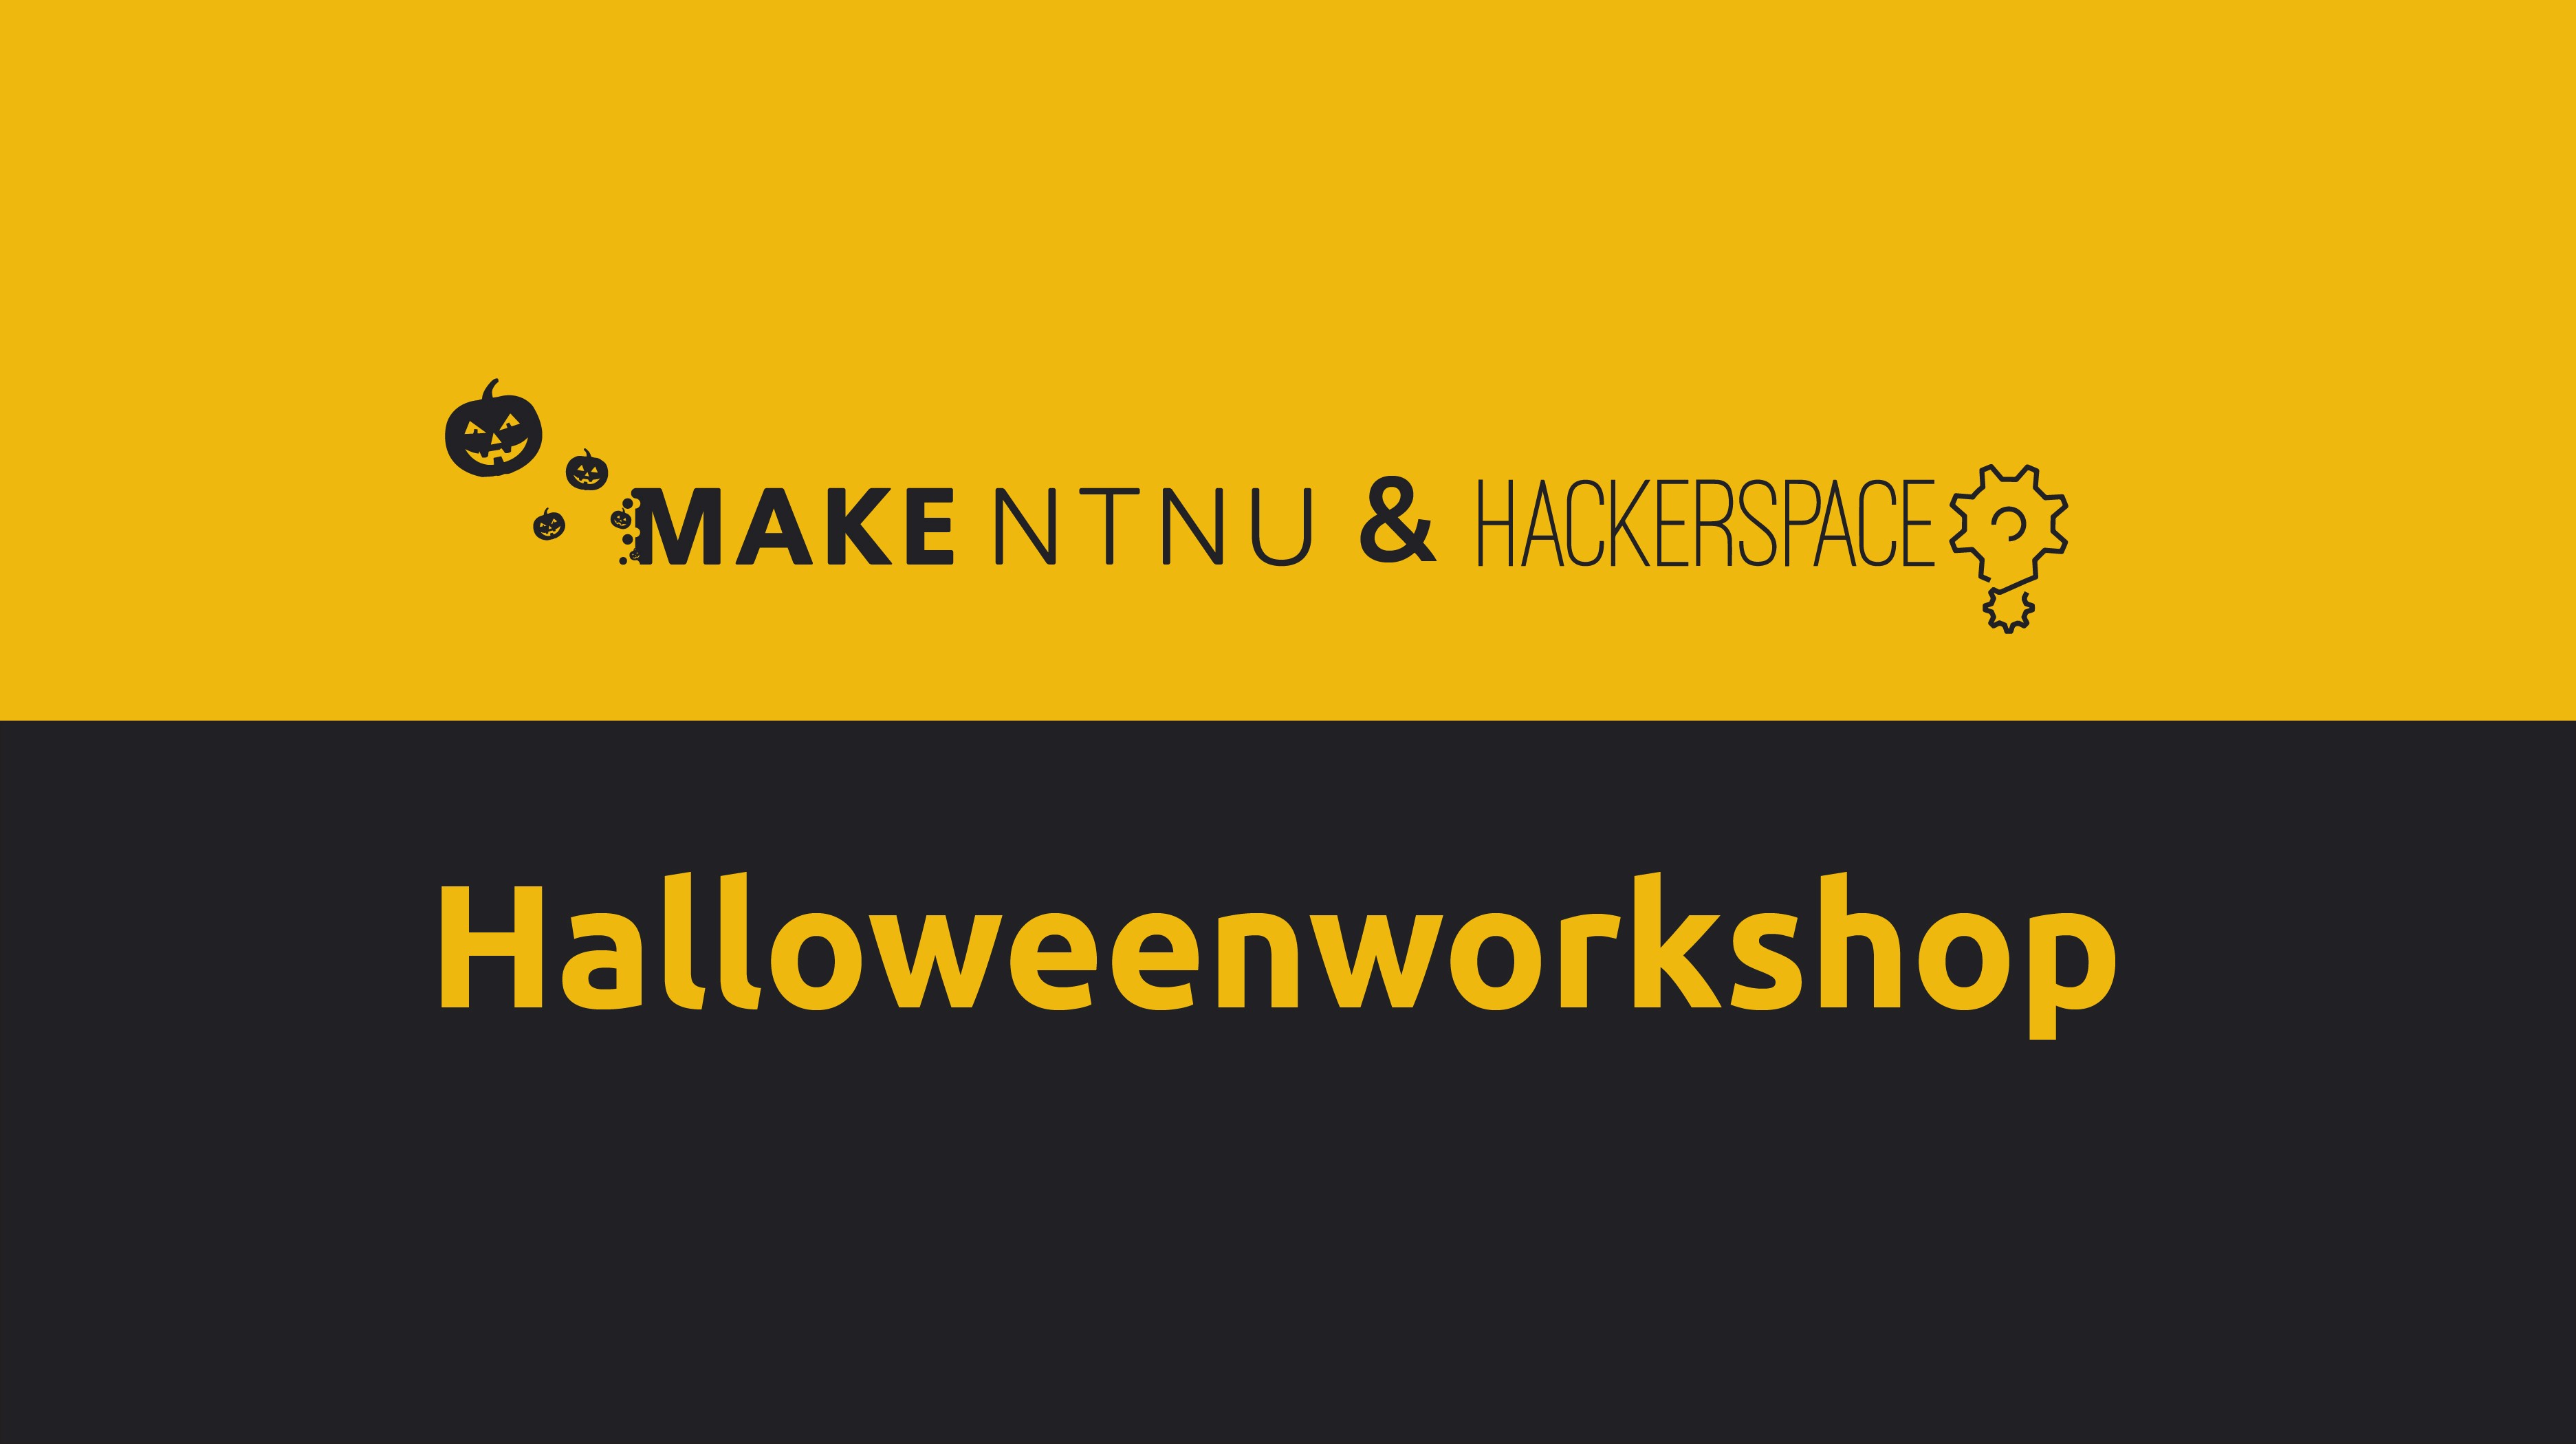 MAKE NTNU & Hackerspace - Halloweenworkshop